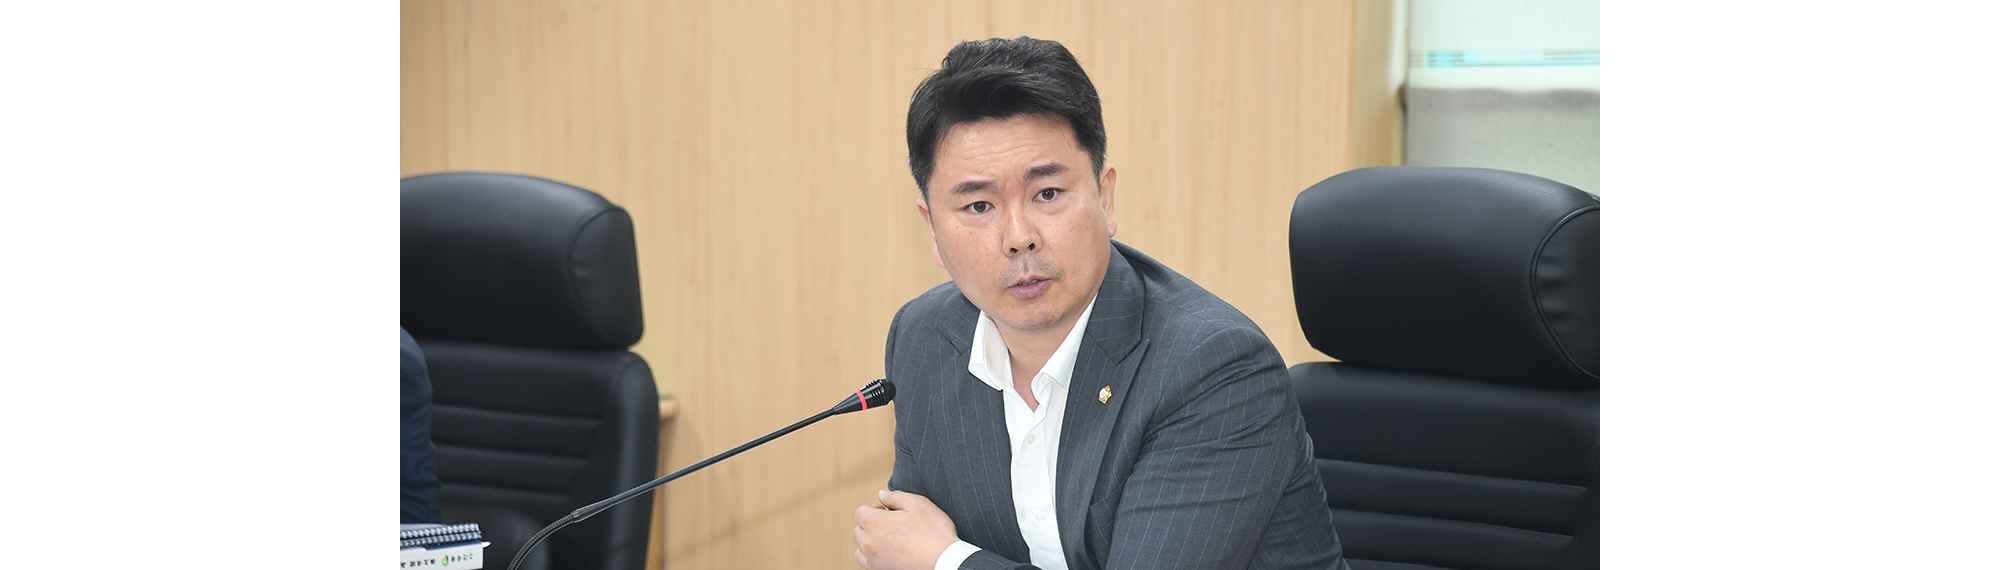 김운호 의원